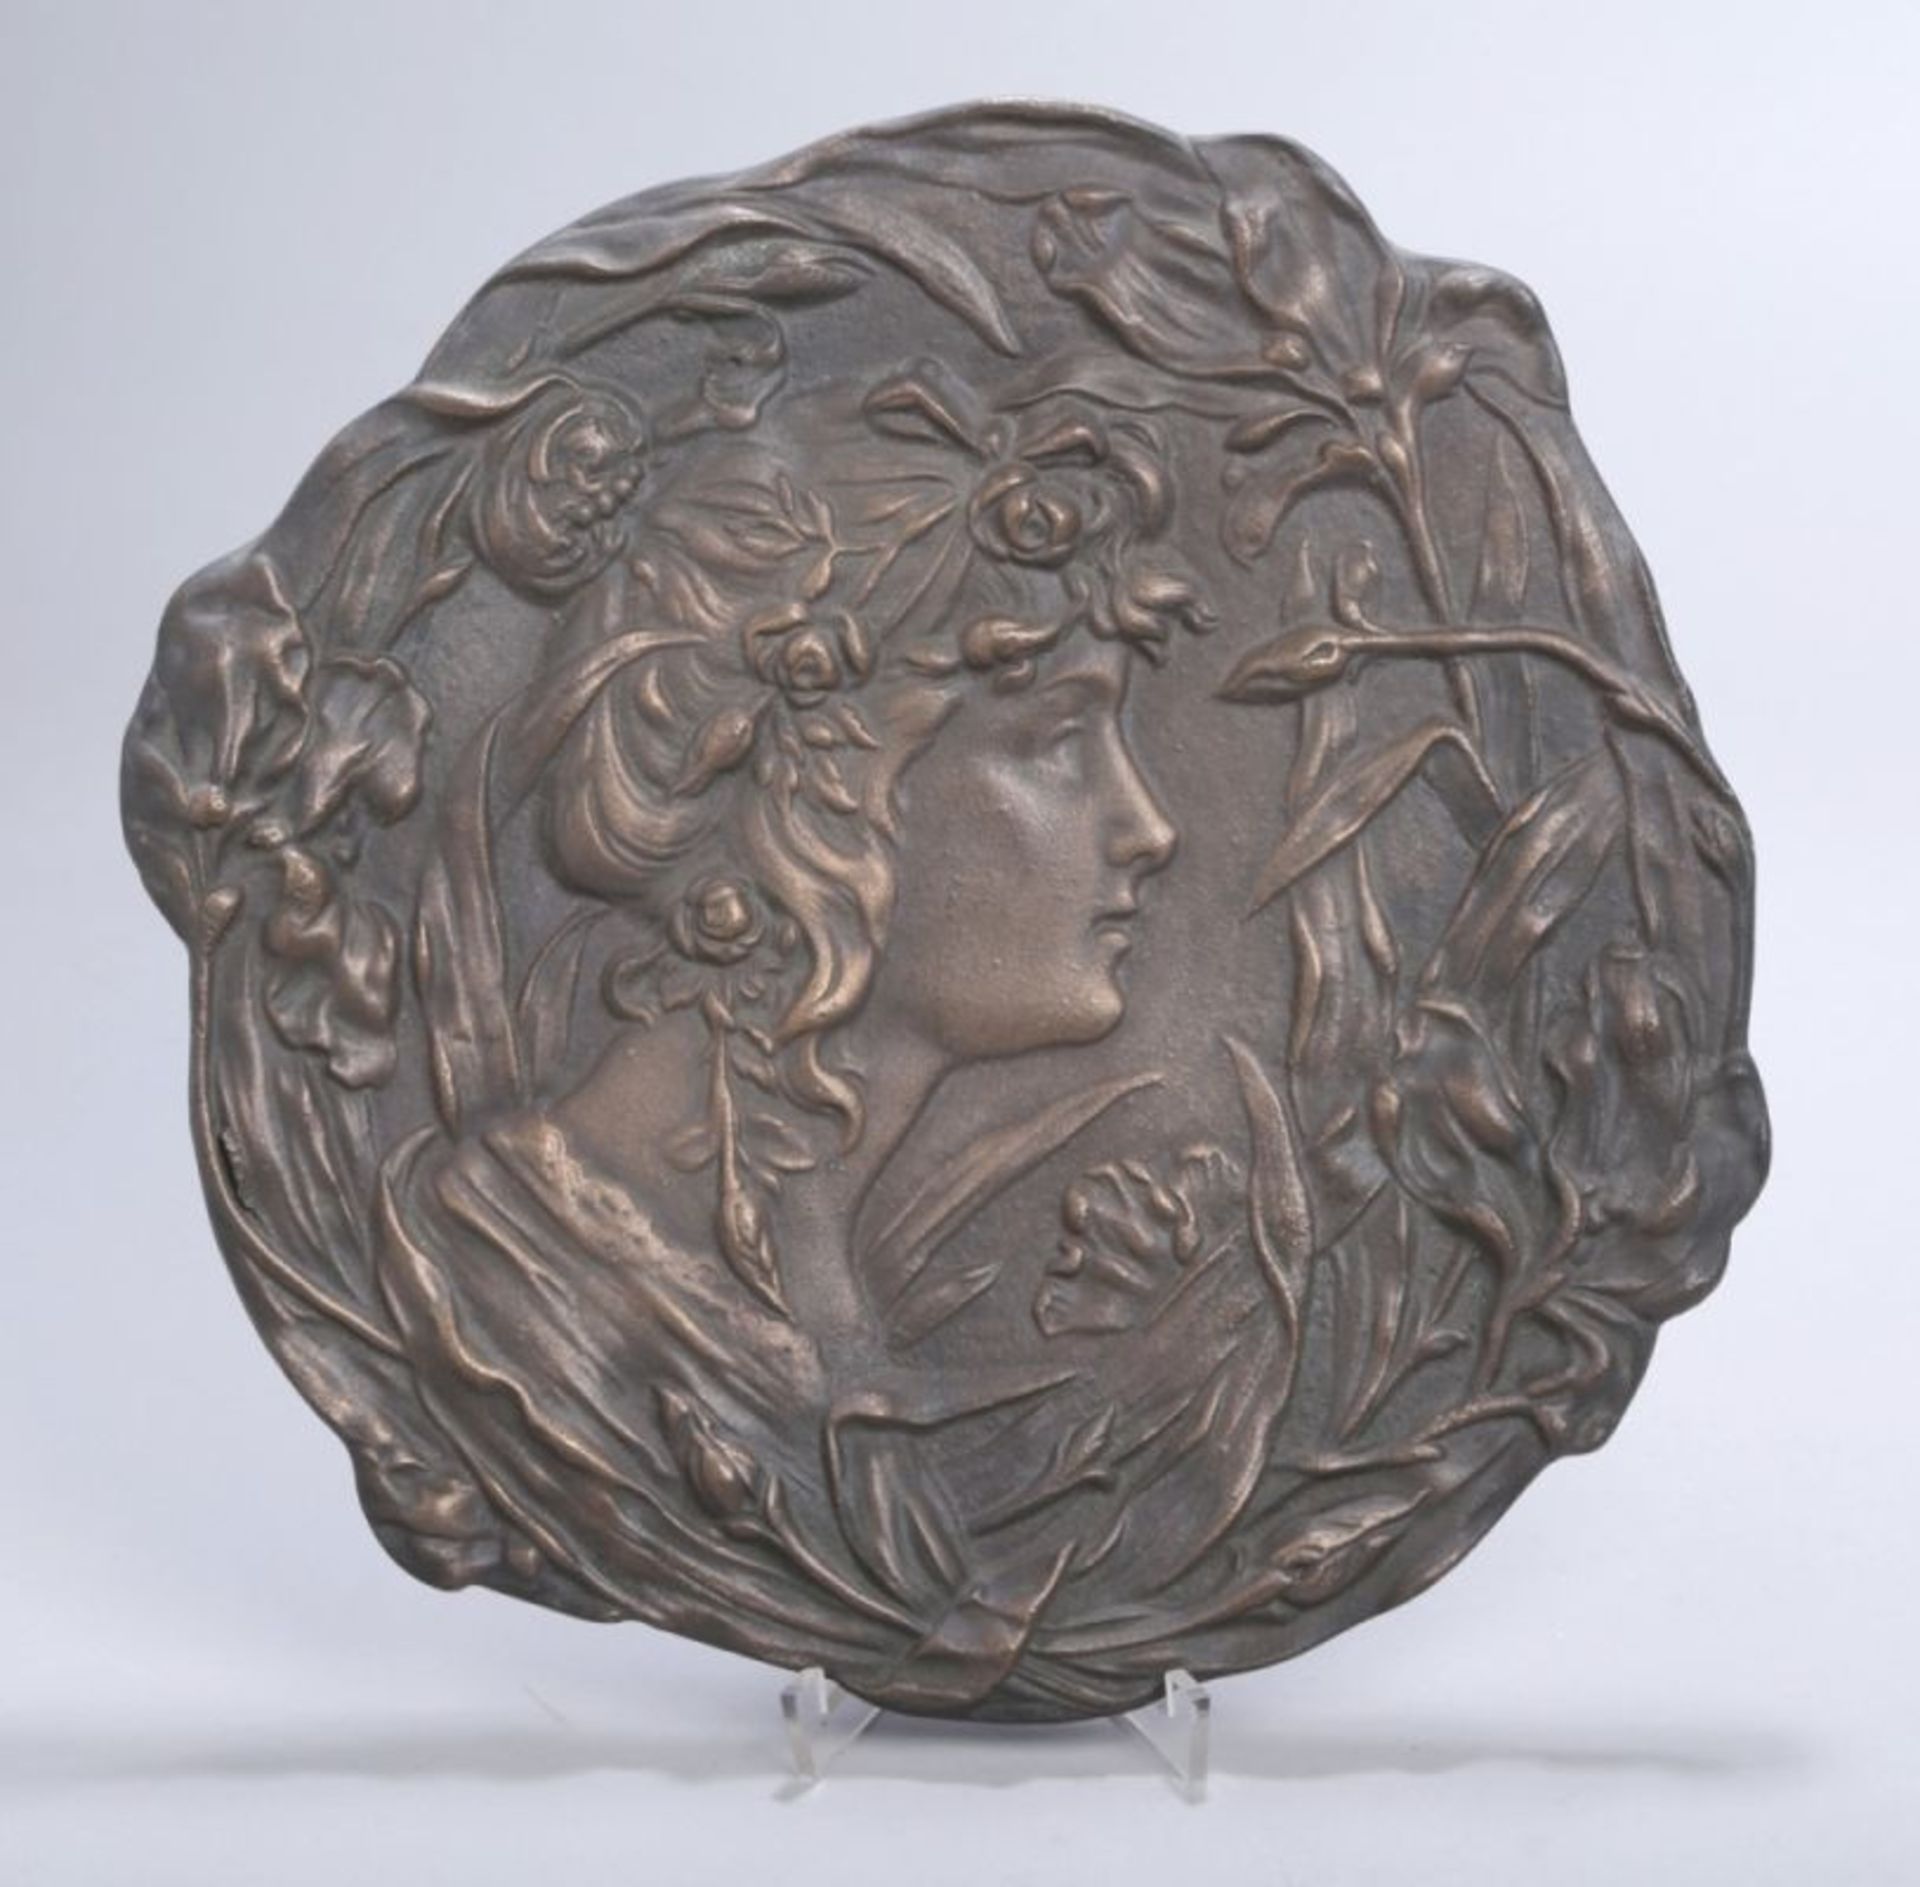 Bronze-Wandteller, Frankreich, um 1895-1910, anonymer Bildhauer, reliefplastischeDarstellung eines